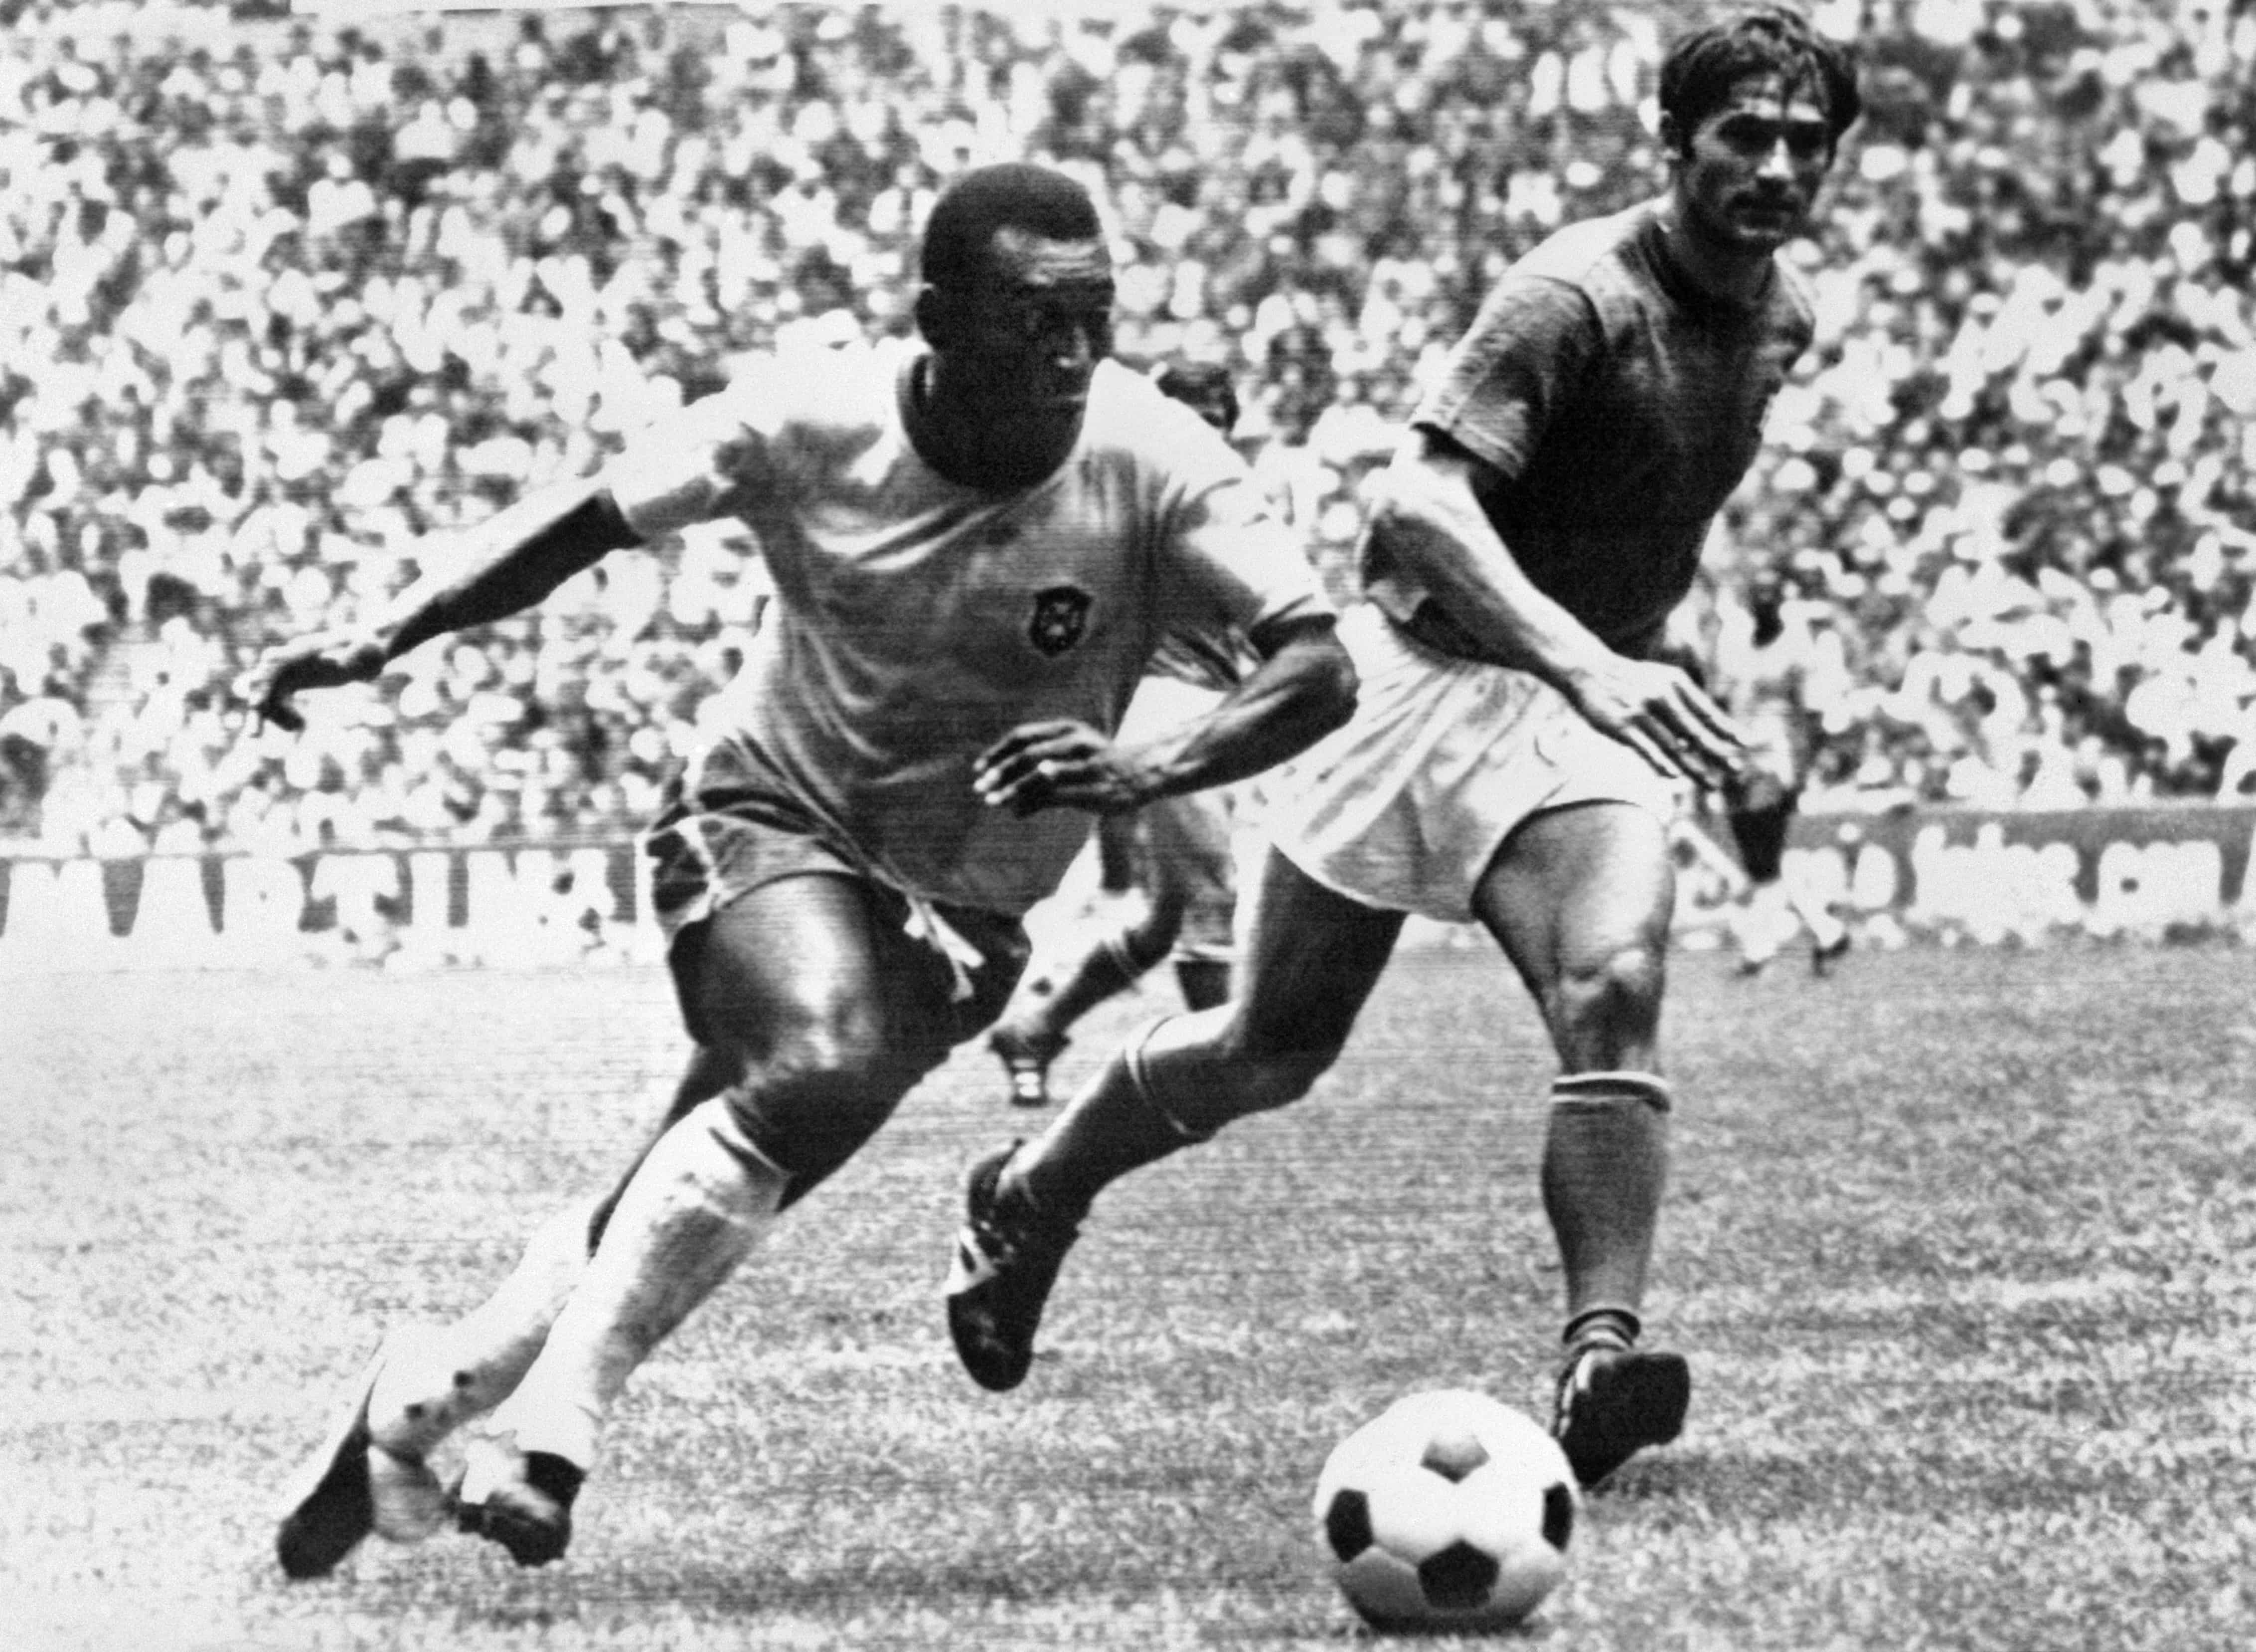 El mediocampista brasileño PelÈ (L) regatea al defensor italiano Tarcisio Burgnich durante la final de la Copa del Mundo el 21 de junio de 1970 en la Ciudad de México. PelÈ anotó el primer gol de su equipo cuando Brasil venció a Italia 4-1 para capturar su tercer título mundial después de 1958 (en Suecia) y 1962 (en Chile).